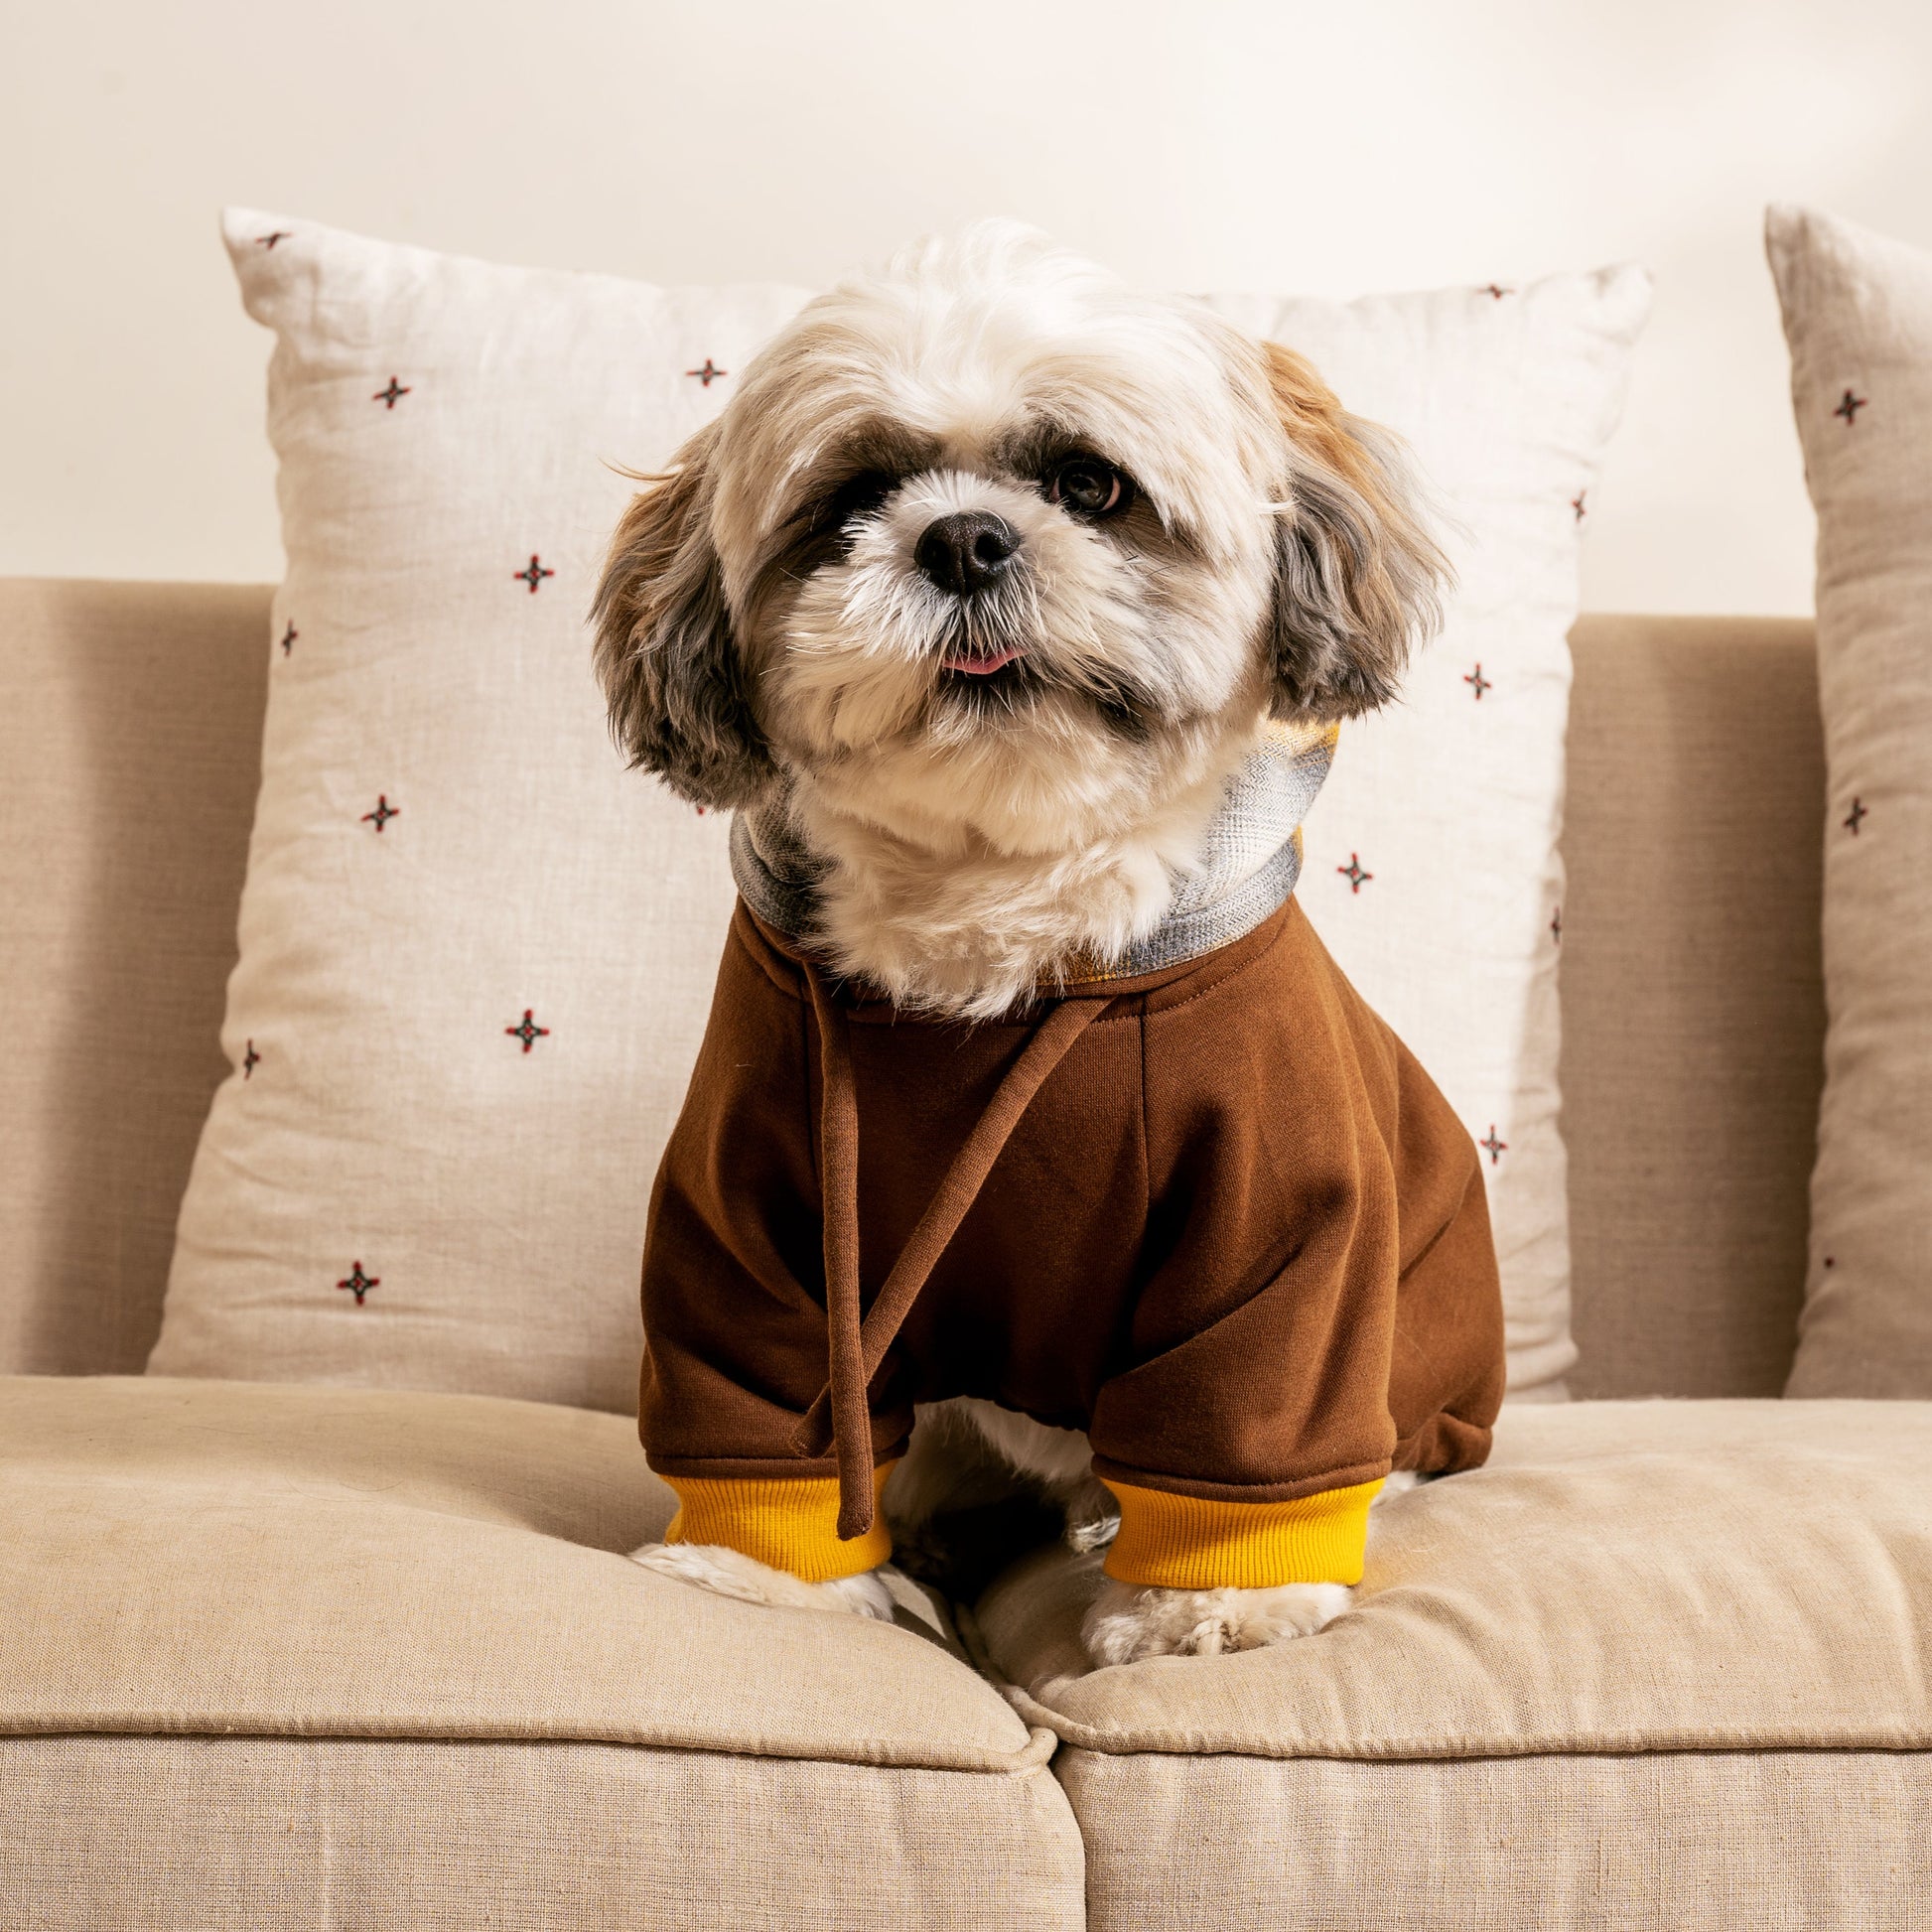 Dog Sweatshirt UAE | Buy Dog Clothes Dubai